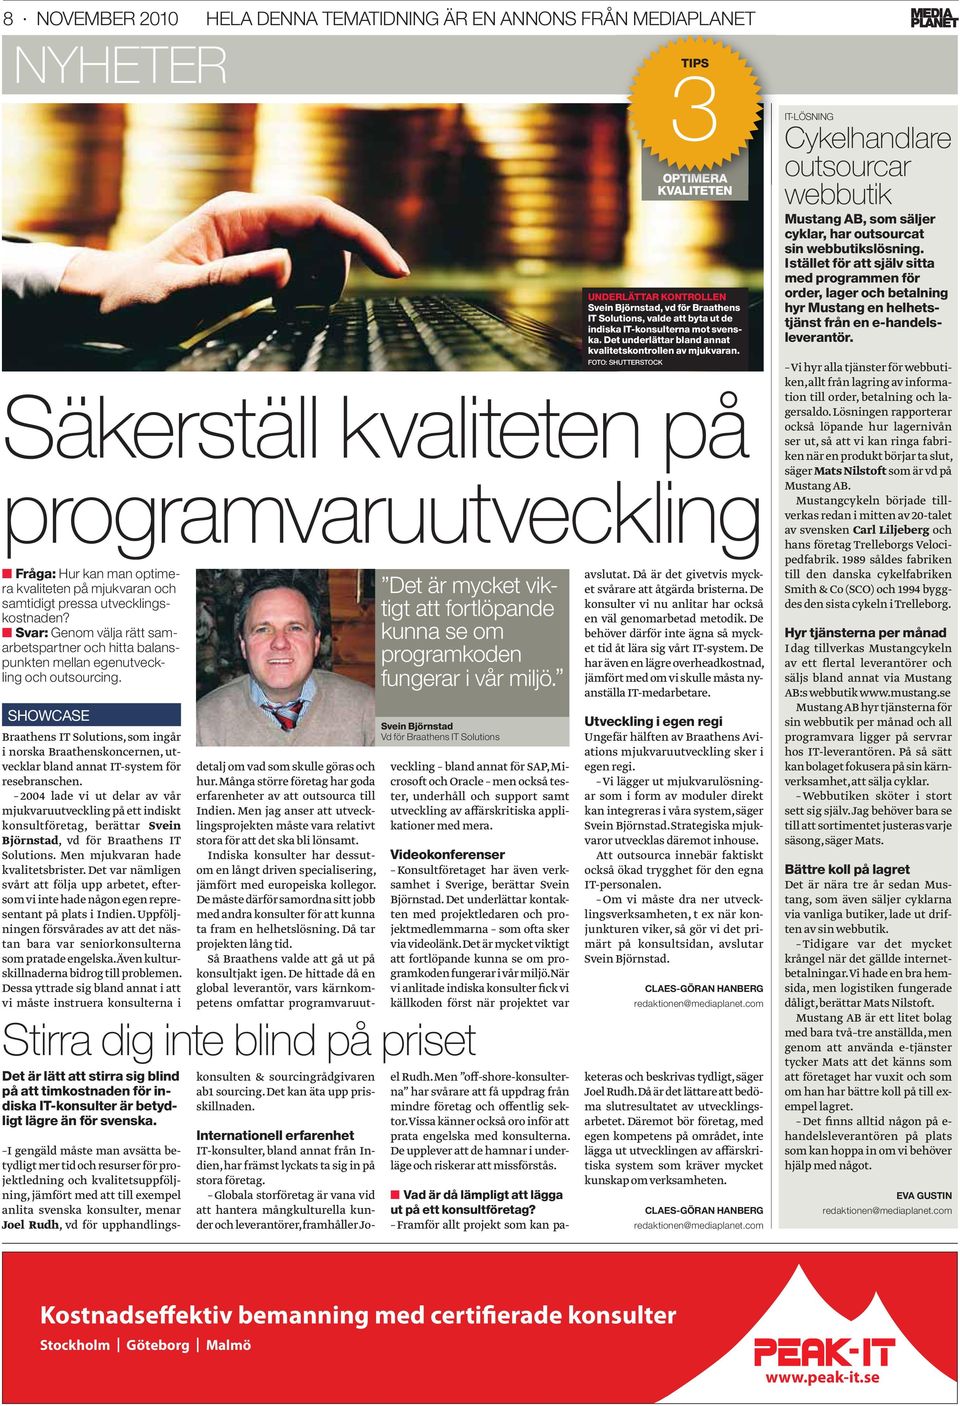 SHOWCASE Braathens IT Solutions, som ingår i norska Braathenskoncernen, utvecklar bland annat IT-system för resebranschen.